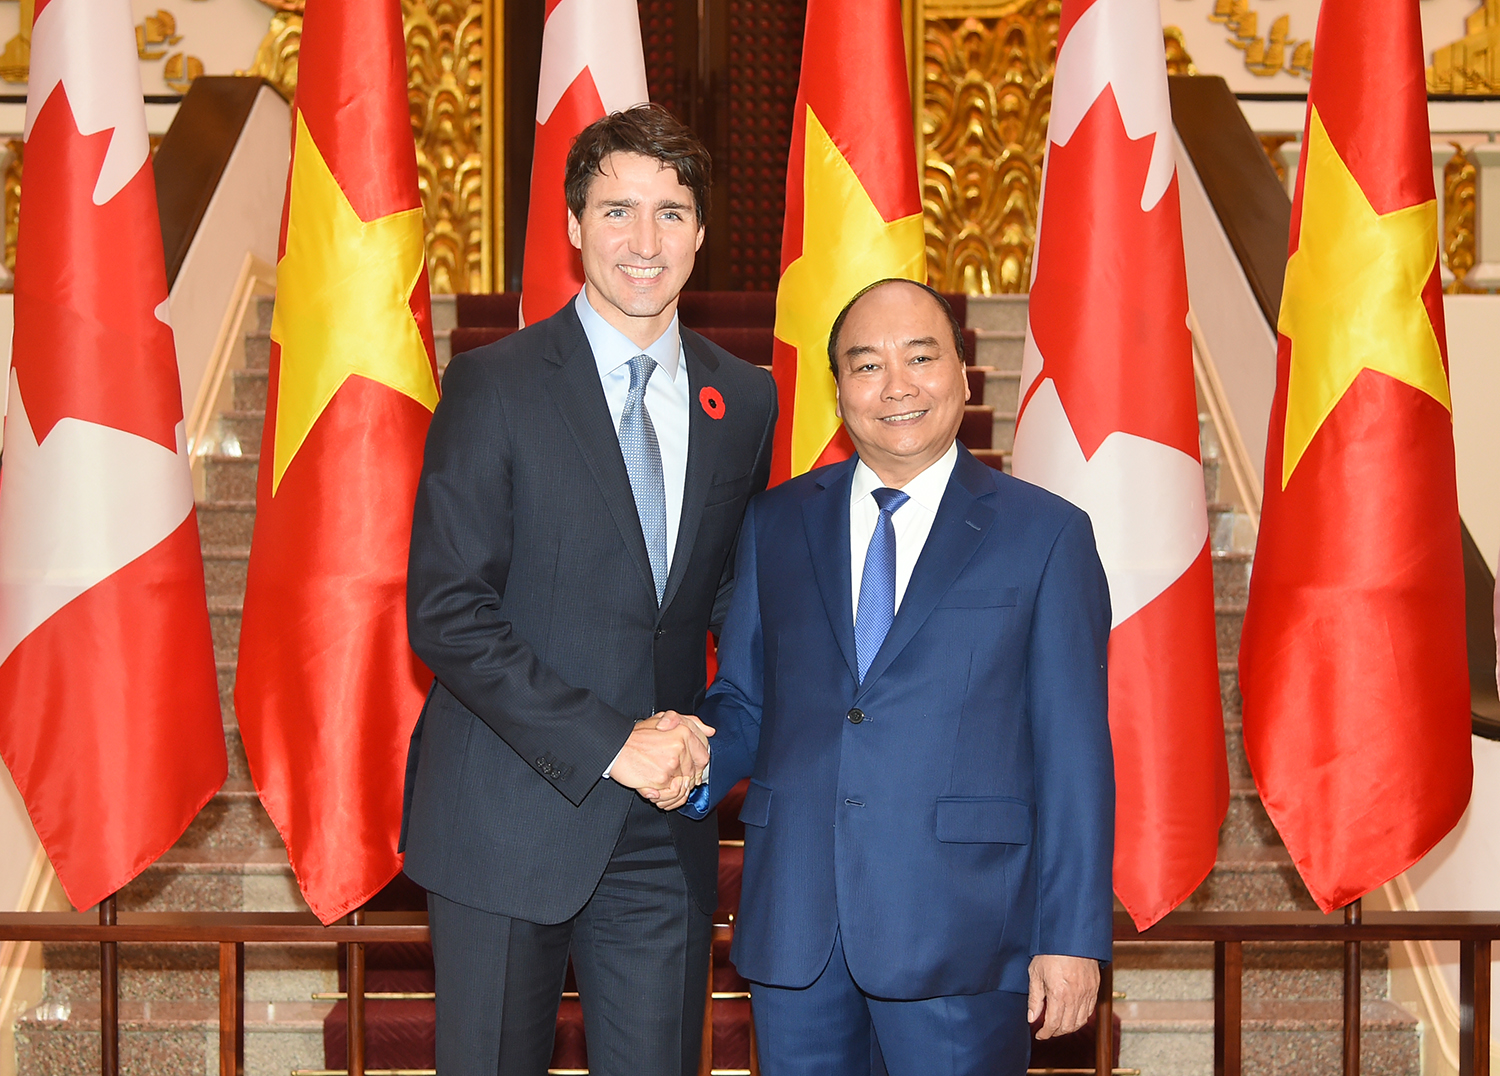 Thủ tướng Nguyễn Xuân Phúc và Thủ tướng Canada Justin Trudeau trước khi tiến hành hội đàm tại Trụ sở Chính phủ